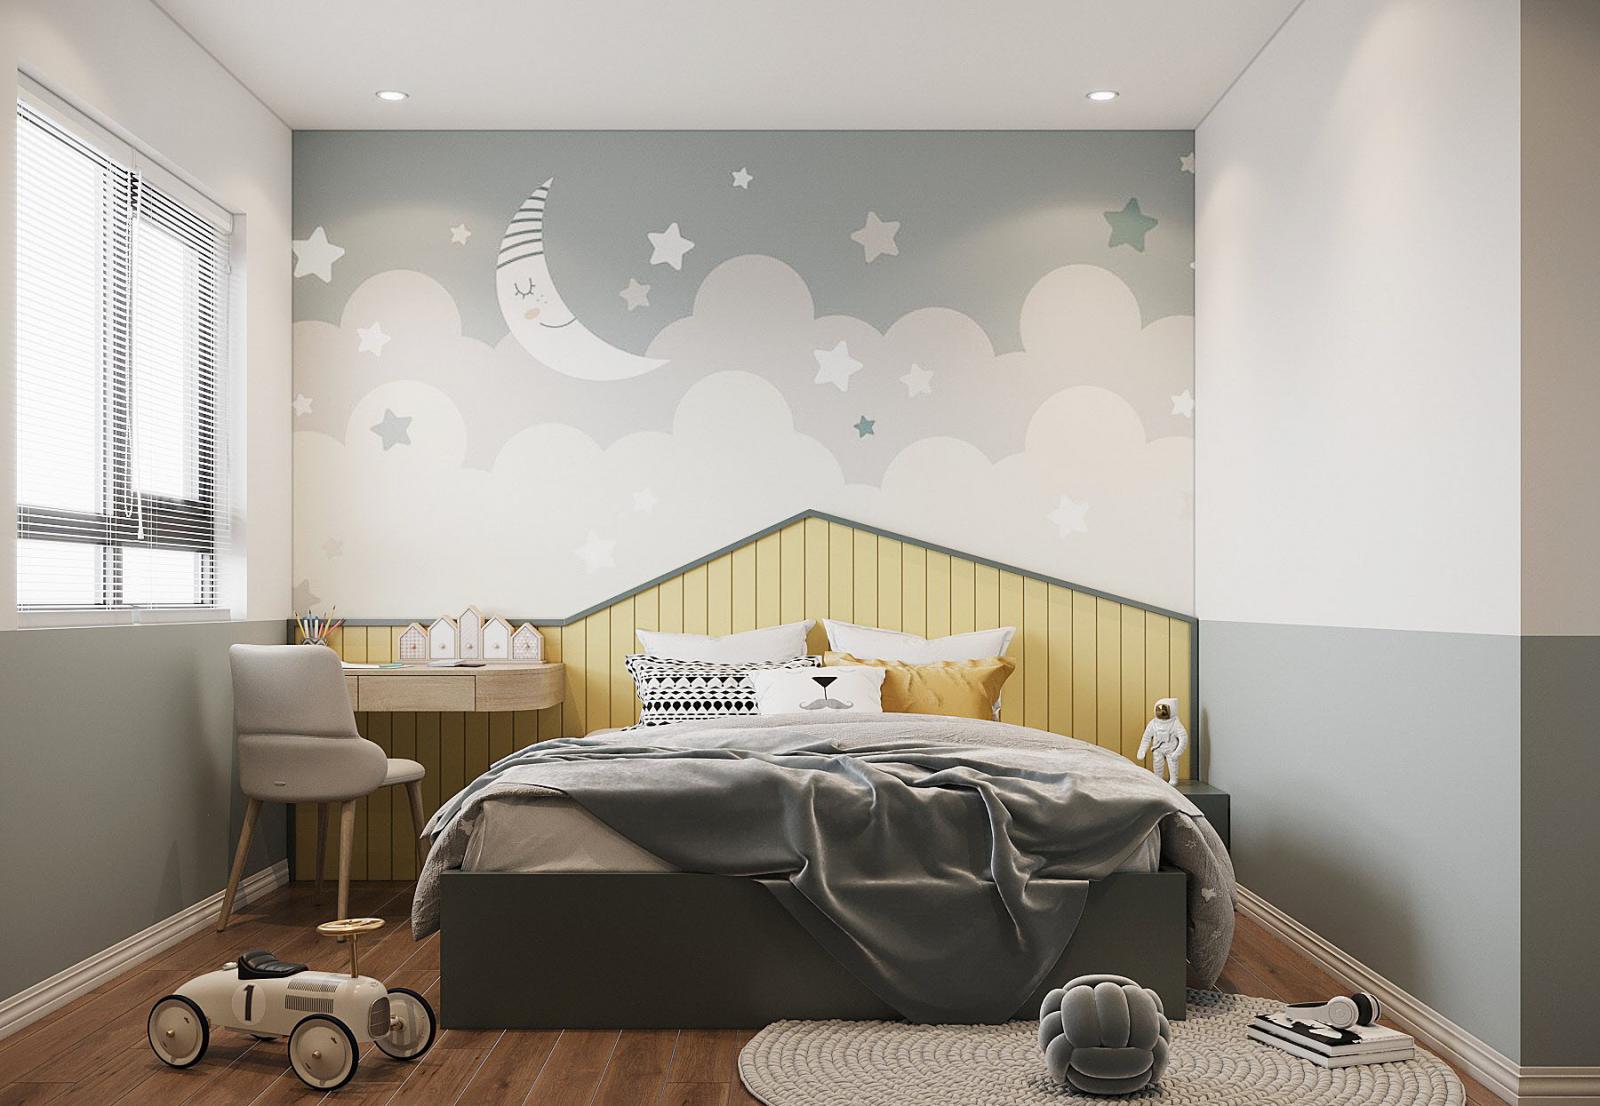 Thiết kế phòng ngủ trẻ em là một trong những điểm nhấn nổi bật của căn hộ 150m2. Các phòng đều khá rộng rãi, trang trí tinh tế, phù hợp độ tuổi của trẻ.